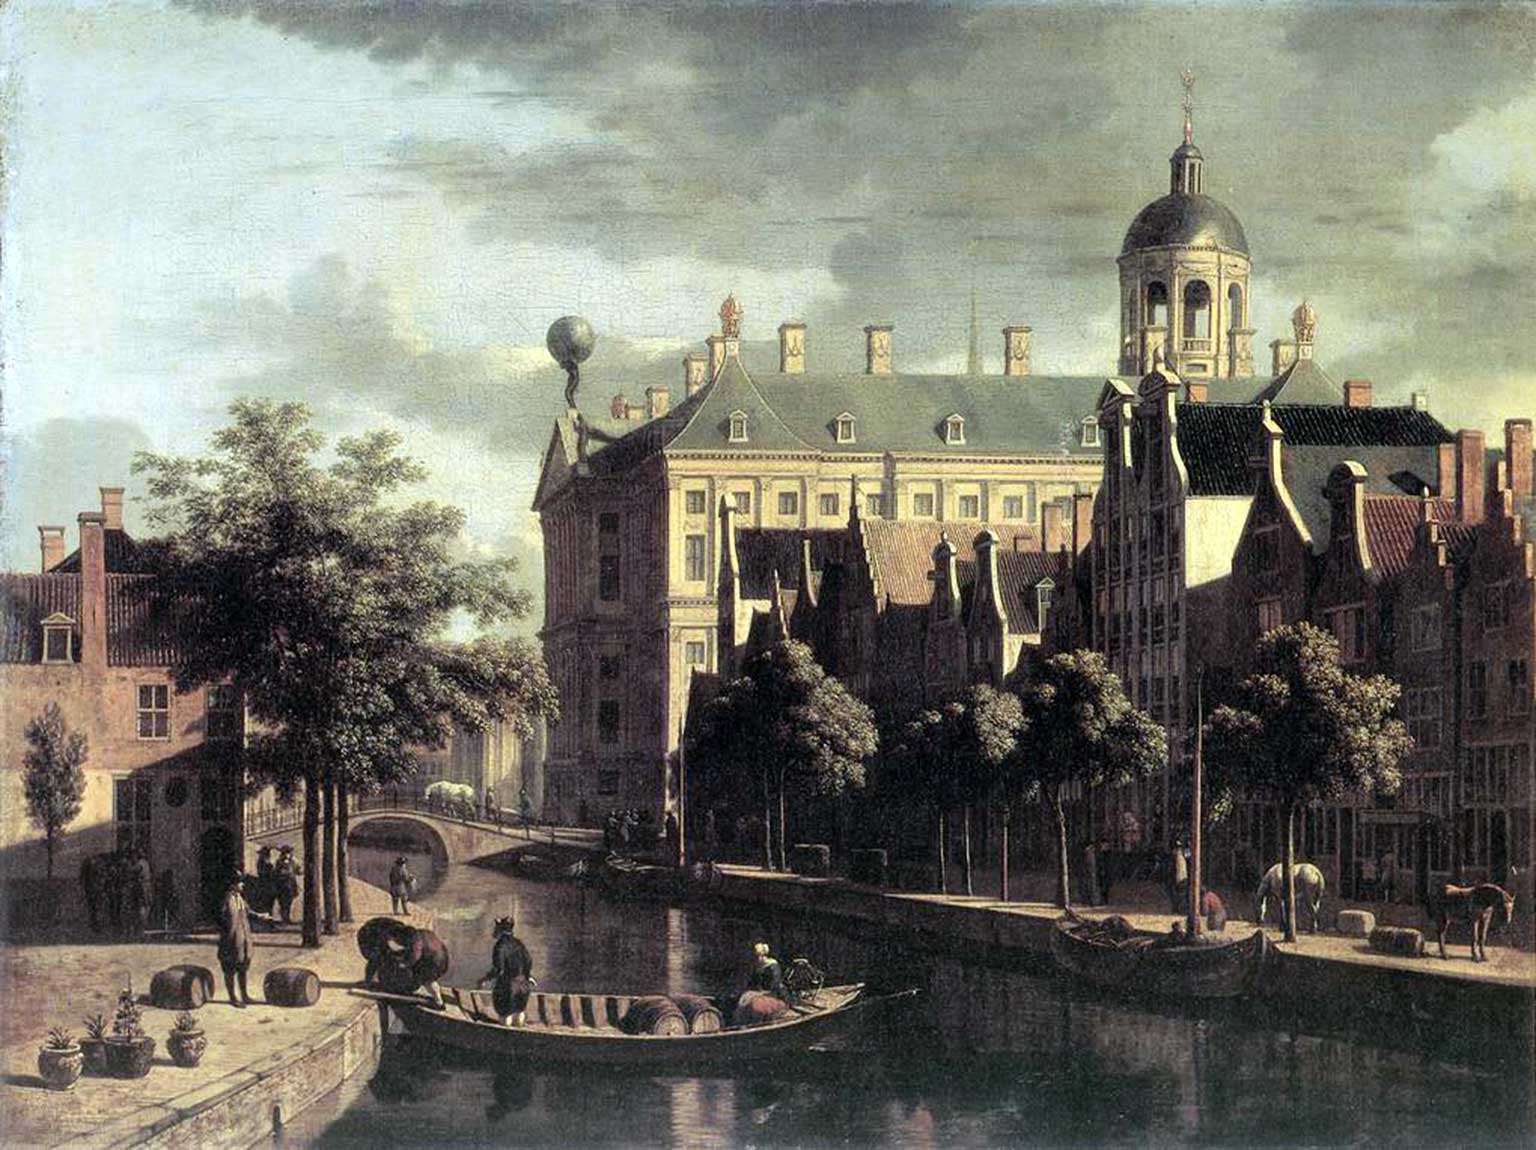 Nieuwezijds Voorburgswal near the Bloemmarkt in 1686, painting by Gerrit Adriaensz. Berckheyde